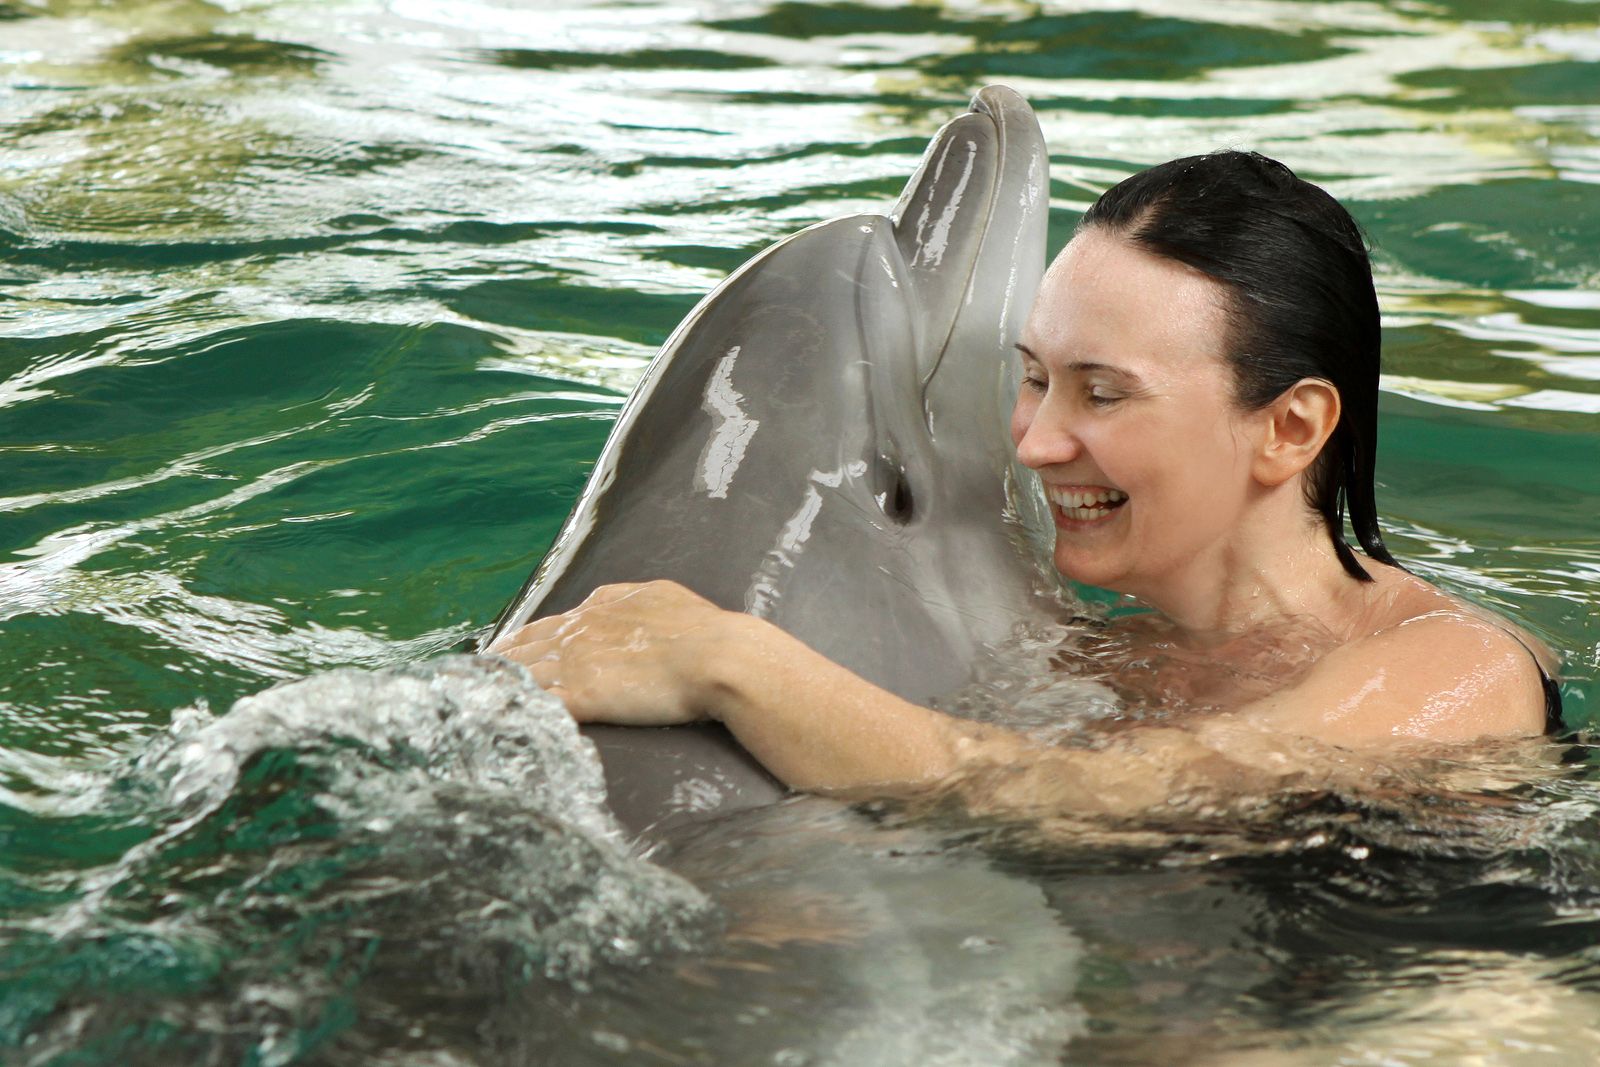 La terapia con delfines favorece la autoestima y la concentración de mayores con trastornos de salud